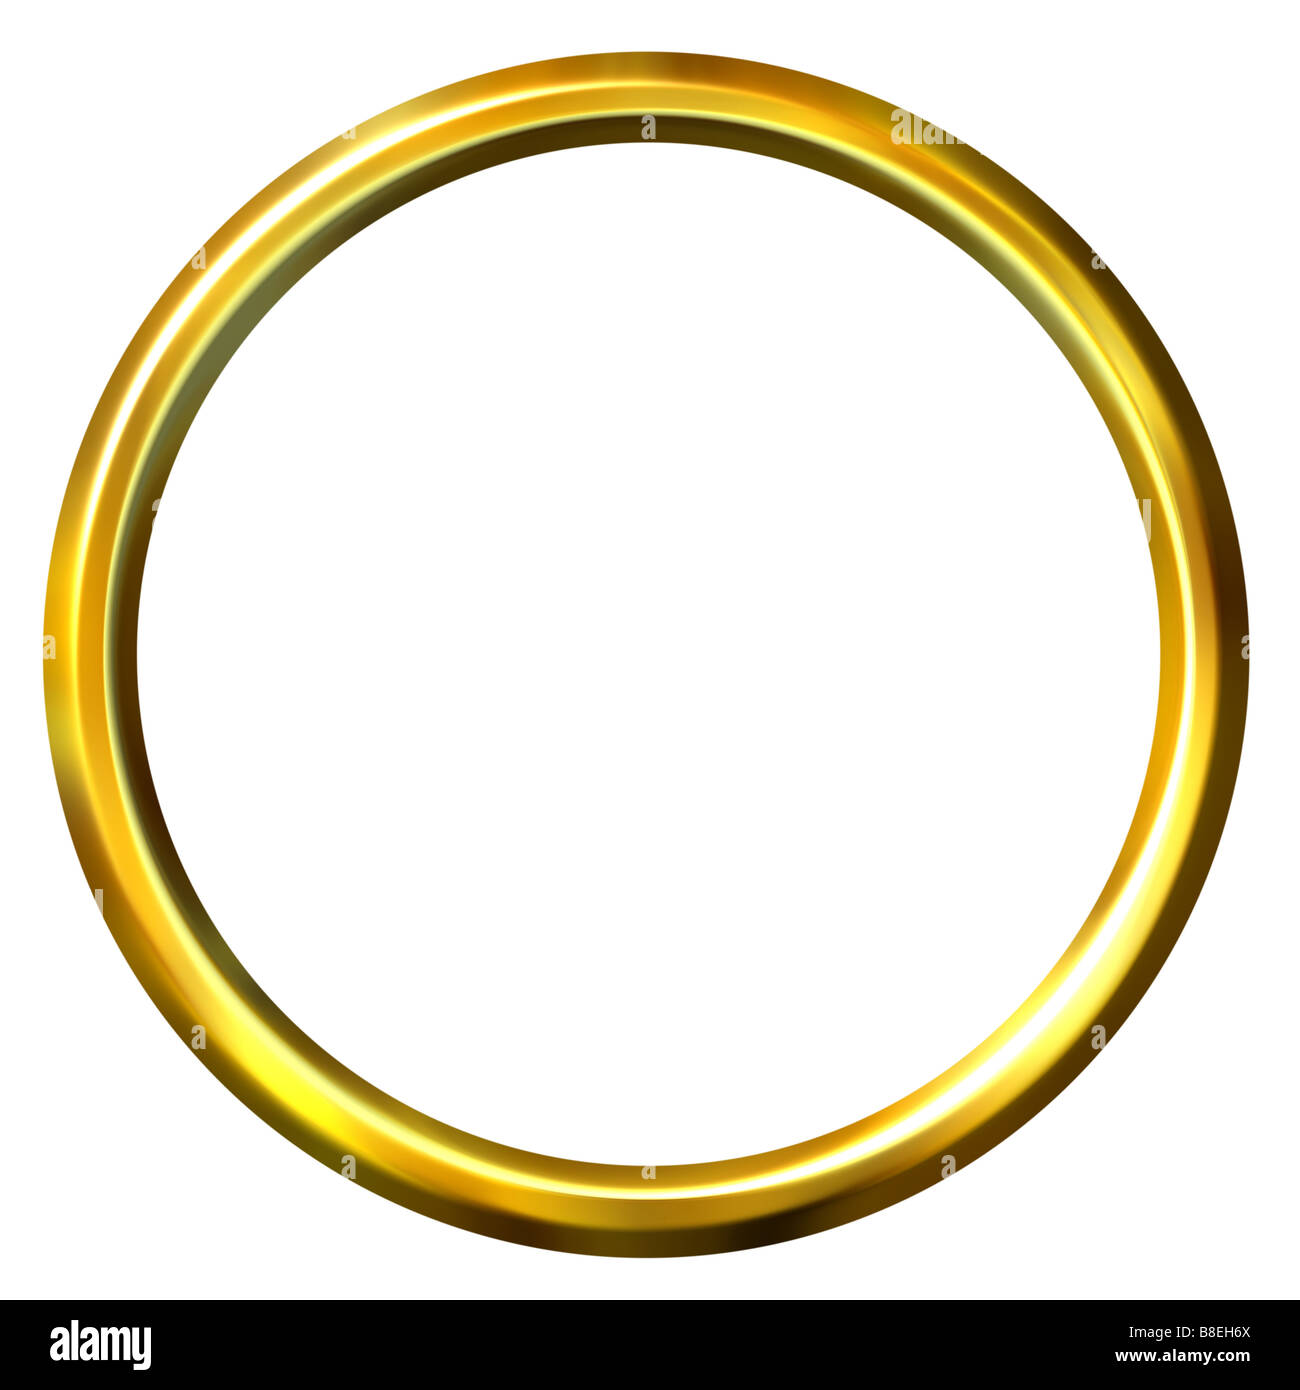 3D Goldener ring Stockfotografie - Alamy